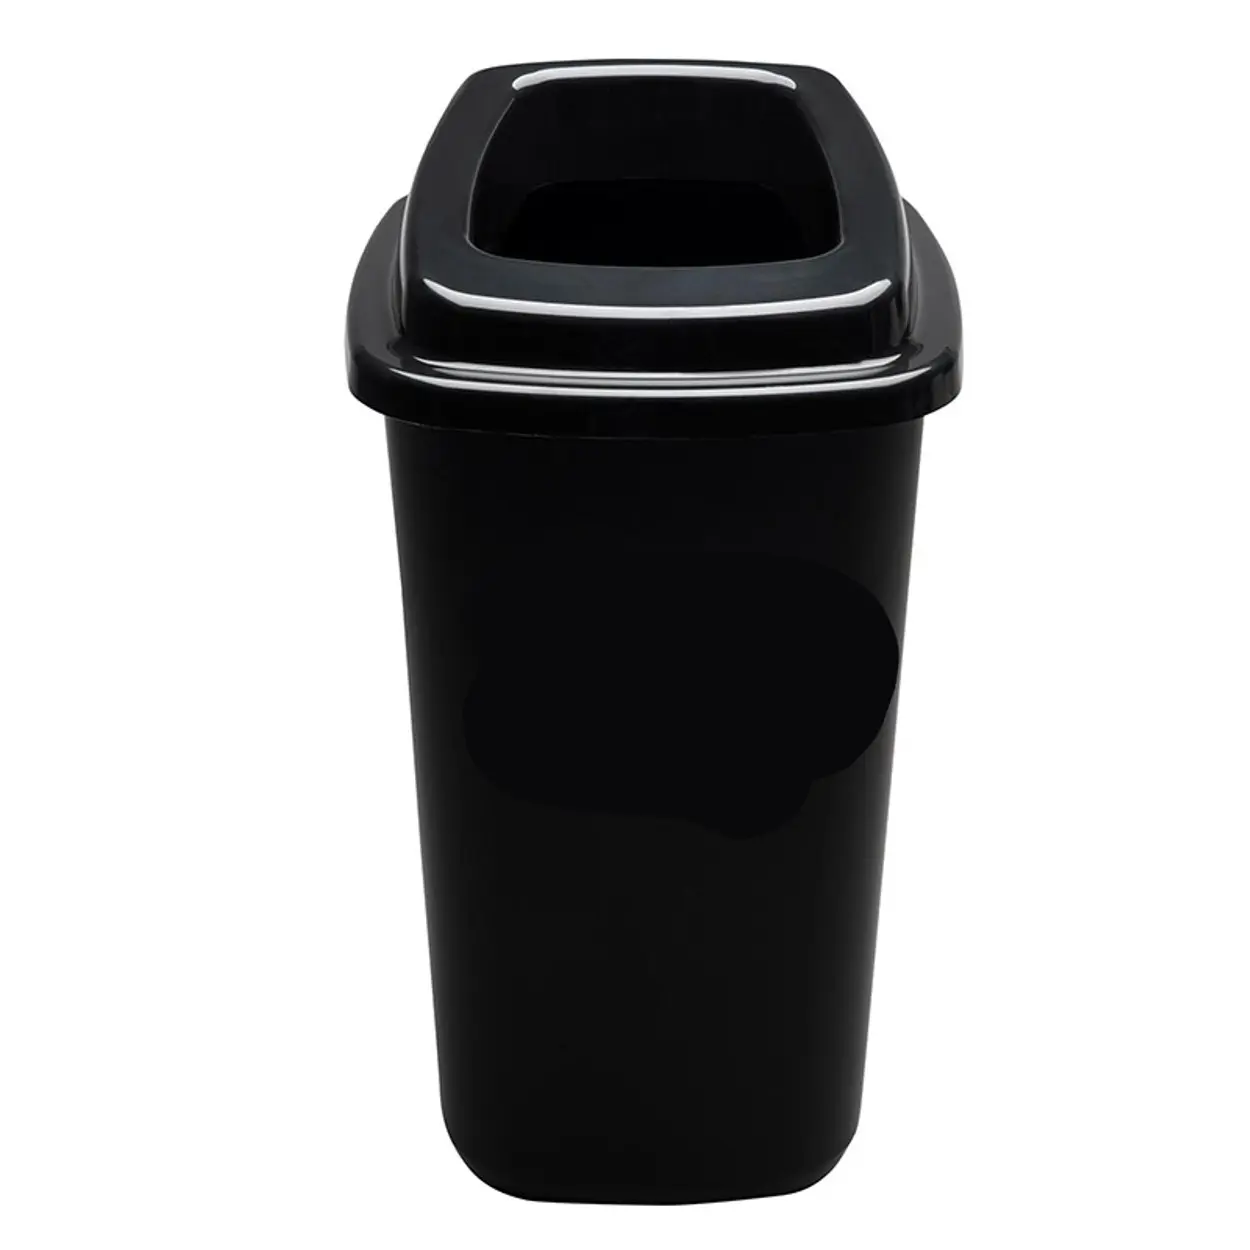 Plastový koš na tříděný odpad, 45 l, černá